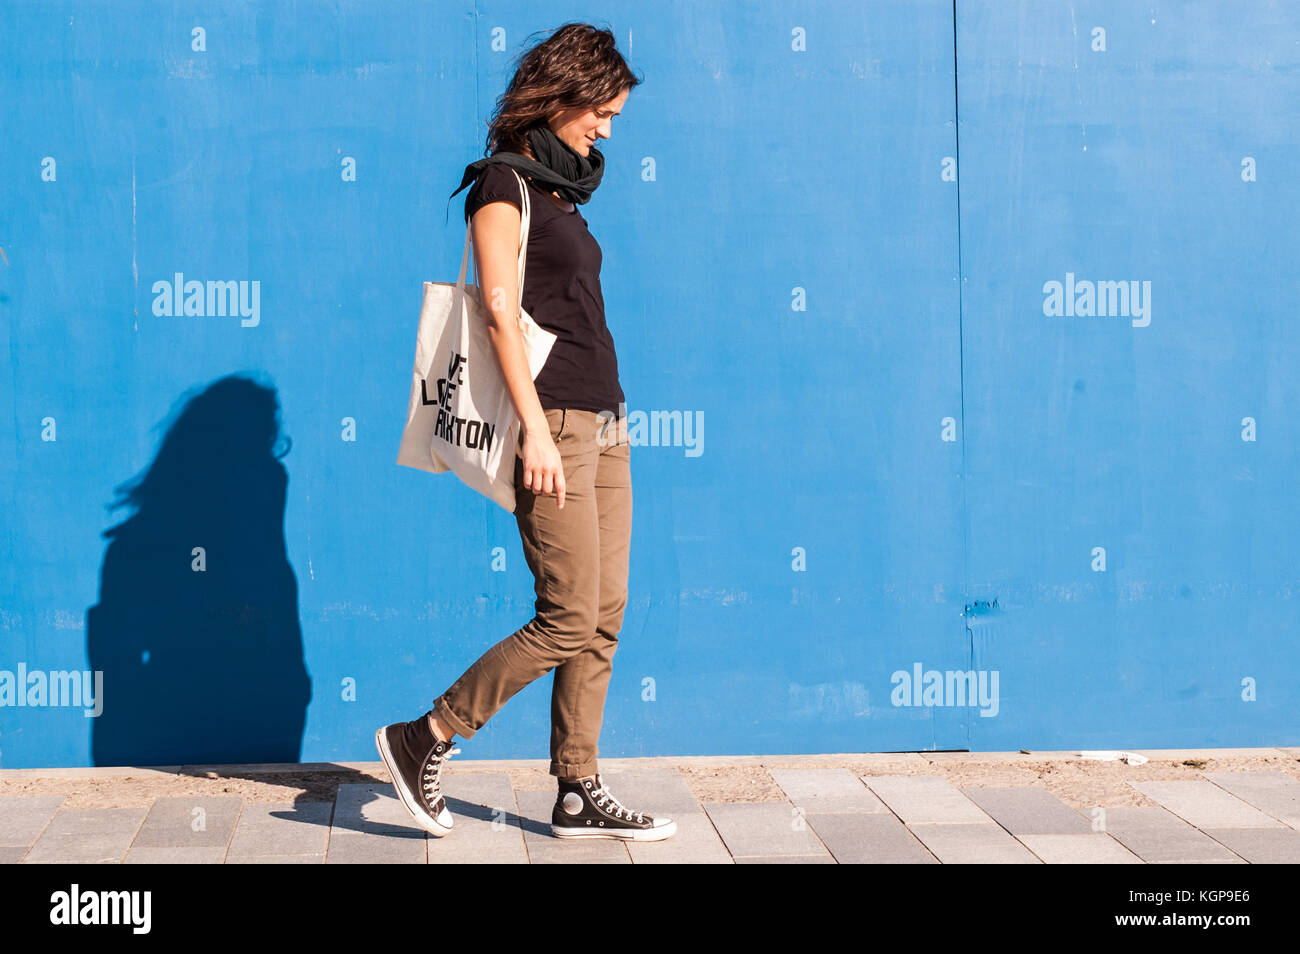 Junge Mädchen in casual braun Chinos, schwarze Turnschuhe und T-Shirt zu  Fuß auf einer Straße mit blauen Wand im Hintergrund gekleidet  Stockfotografie - Alamy